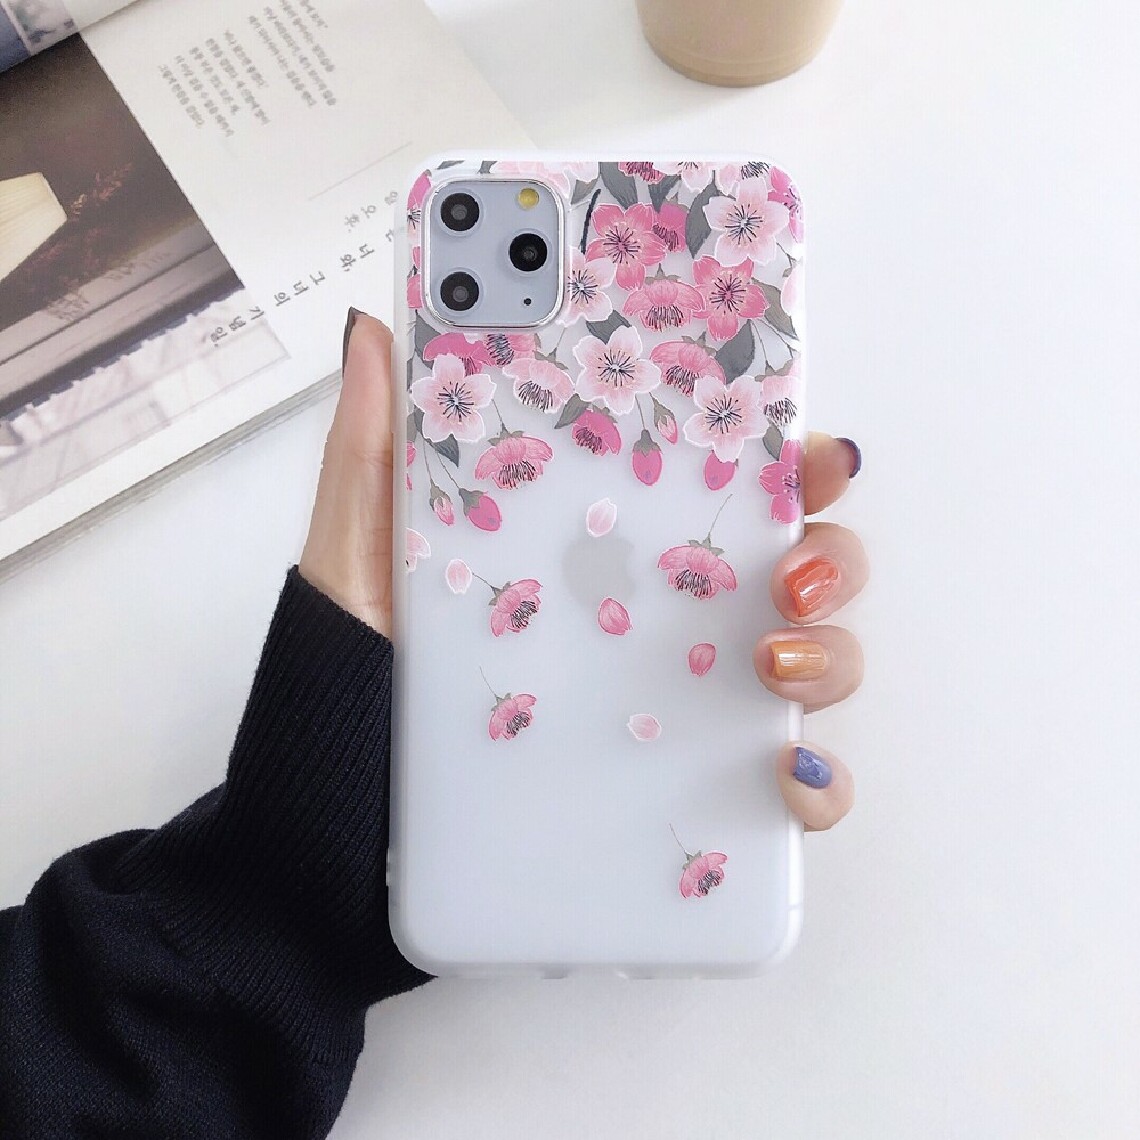 Other - Coque en TPU fleur fantaisie série motif impression fleur style G pour votre Apple iPhone 12 Pro Max - Coque, étui smartphone